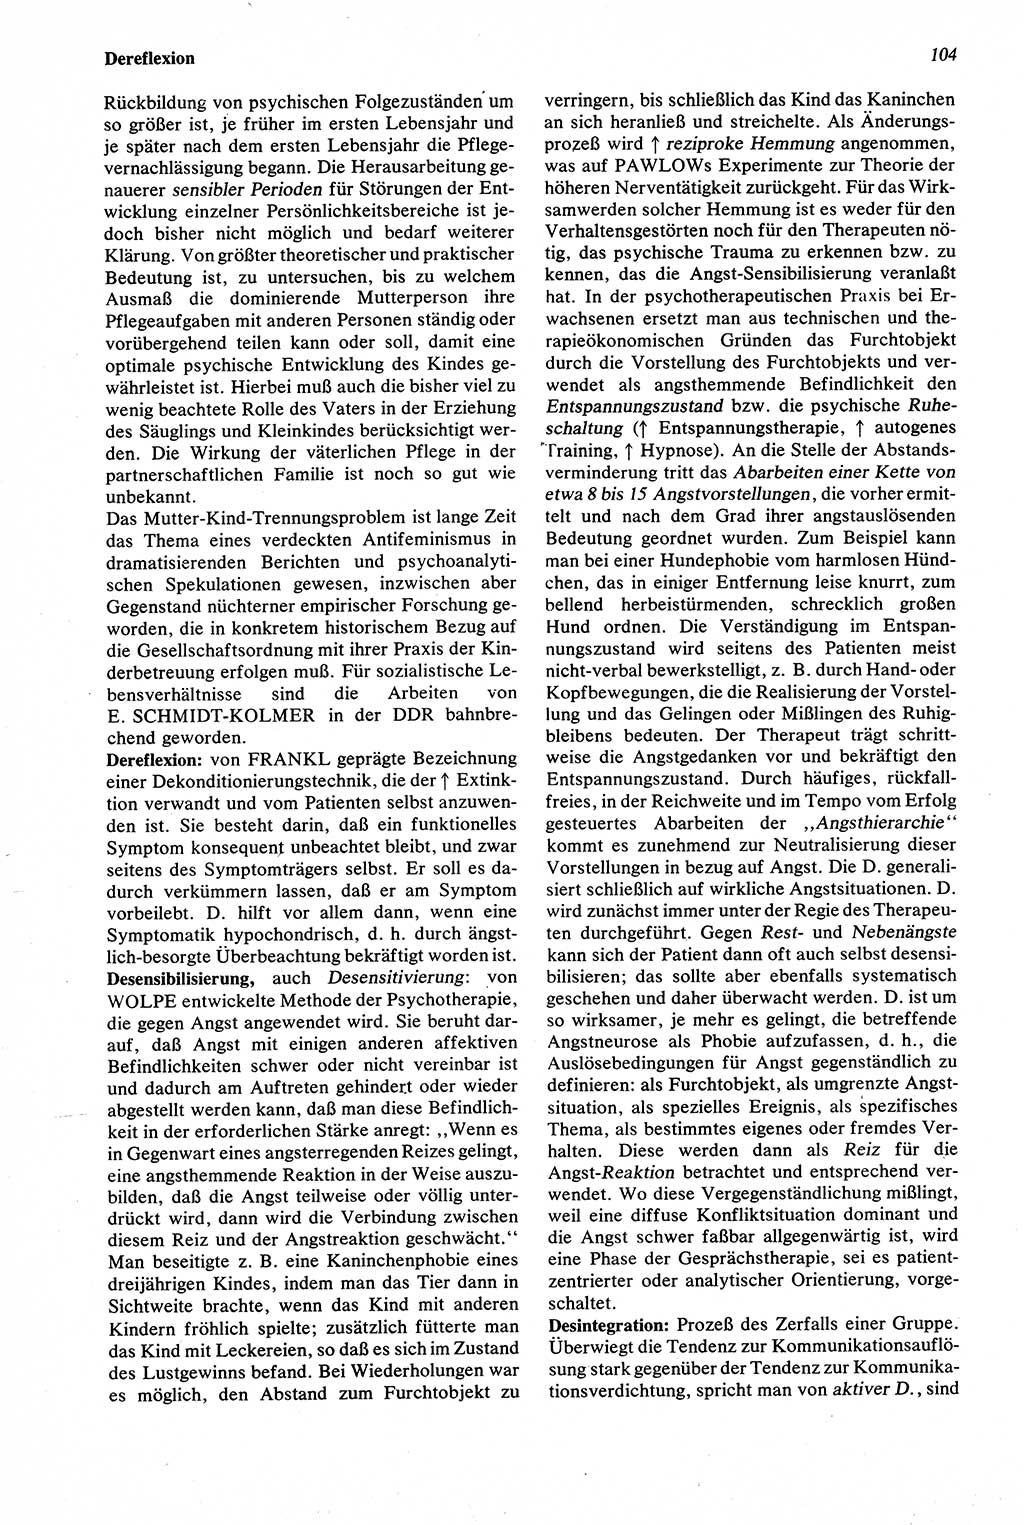 Wörterbuch der Psychologie [Deutsche Demokratische Republik (DDR)] 1976, Seite 104 (Wb. Psych. DDR 1976, S. 104)